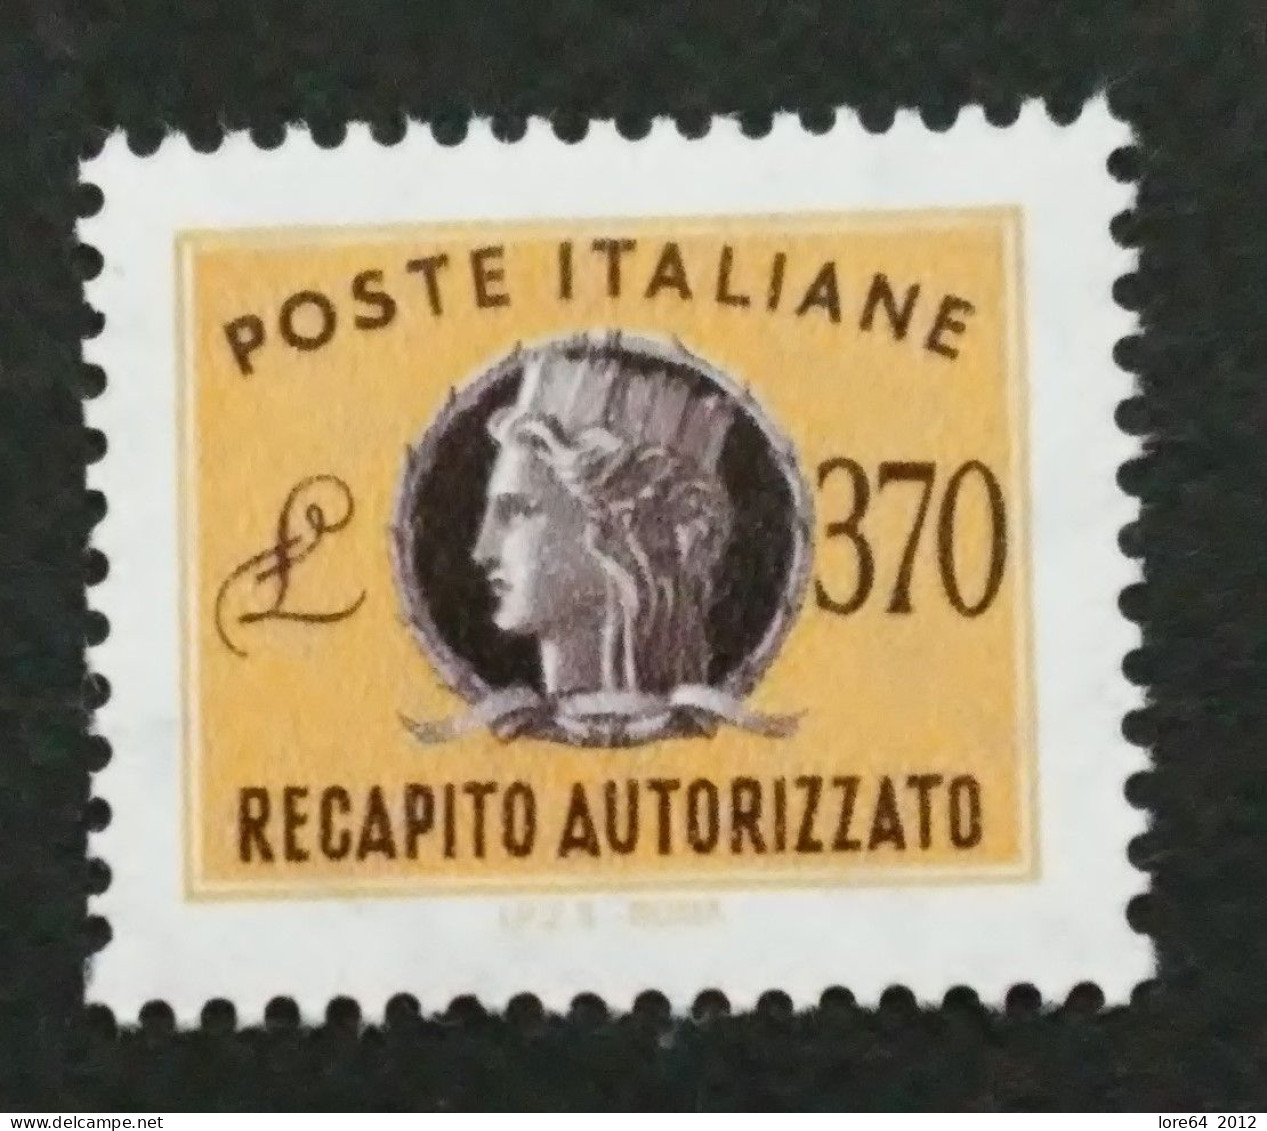 ITALIA 1990 - Recapito Autorizzato N° Catalogo Unificato 18 Nuovo** - Express/pneumatic Mail